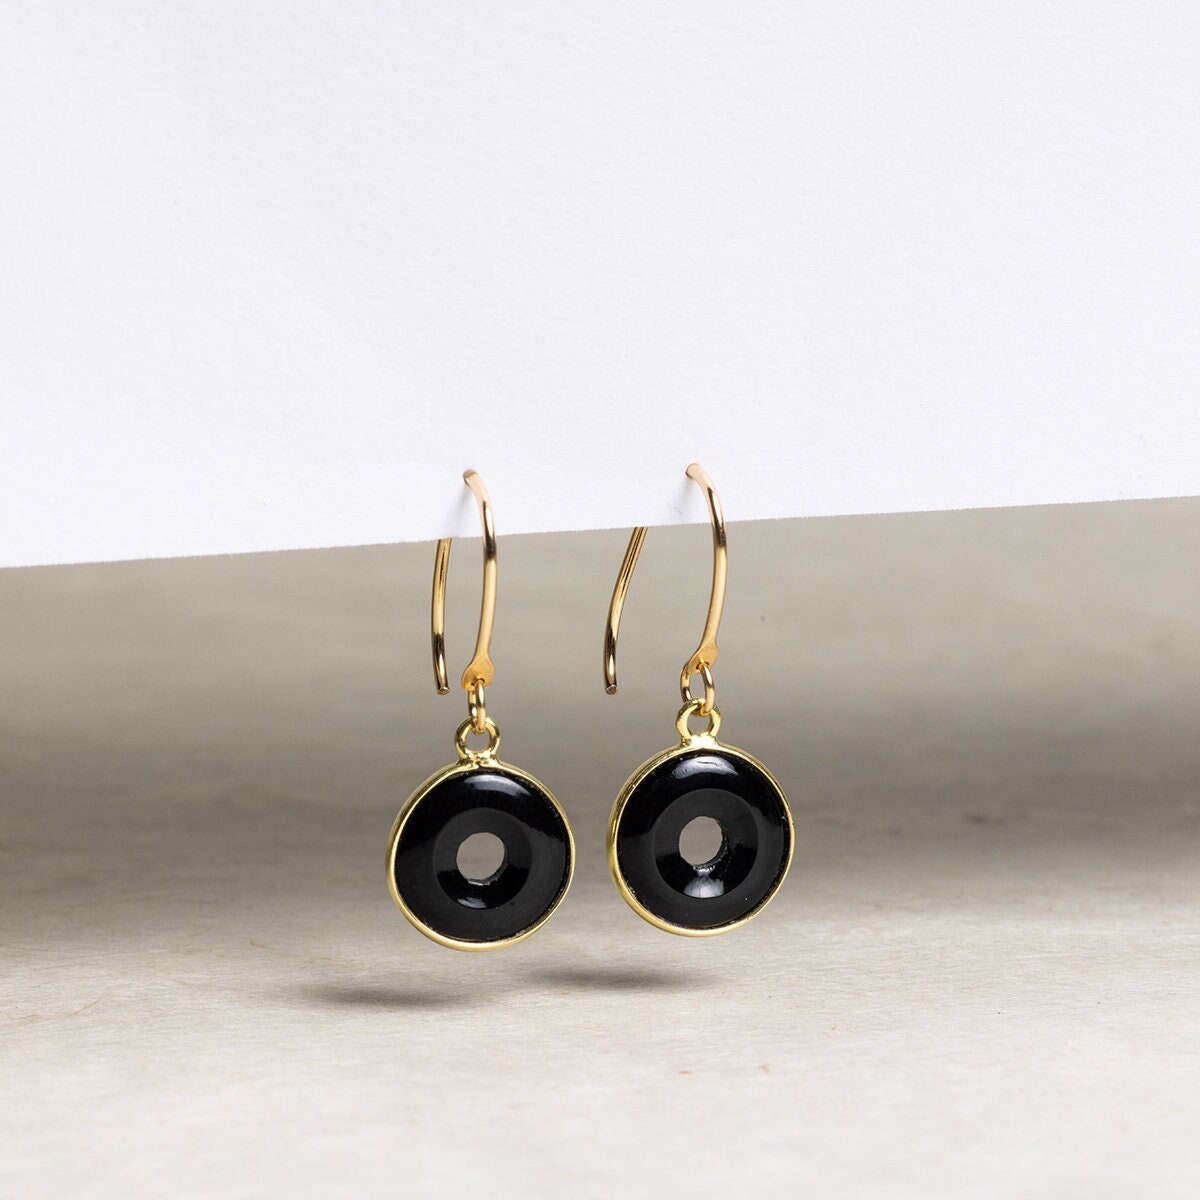 Black Onyx Dangle Drop Earrings with 14k Gold Filled Ear-Wires Earrings Soul & Little Rose   